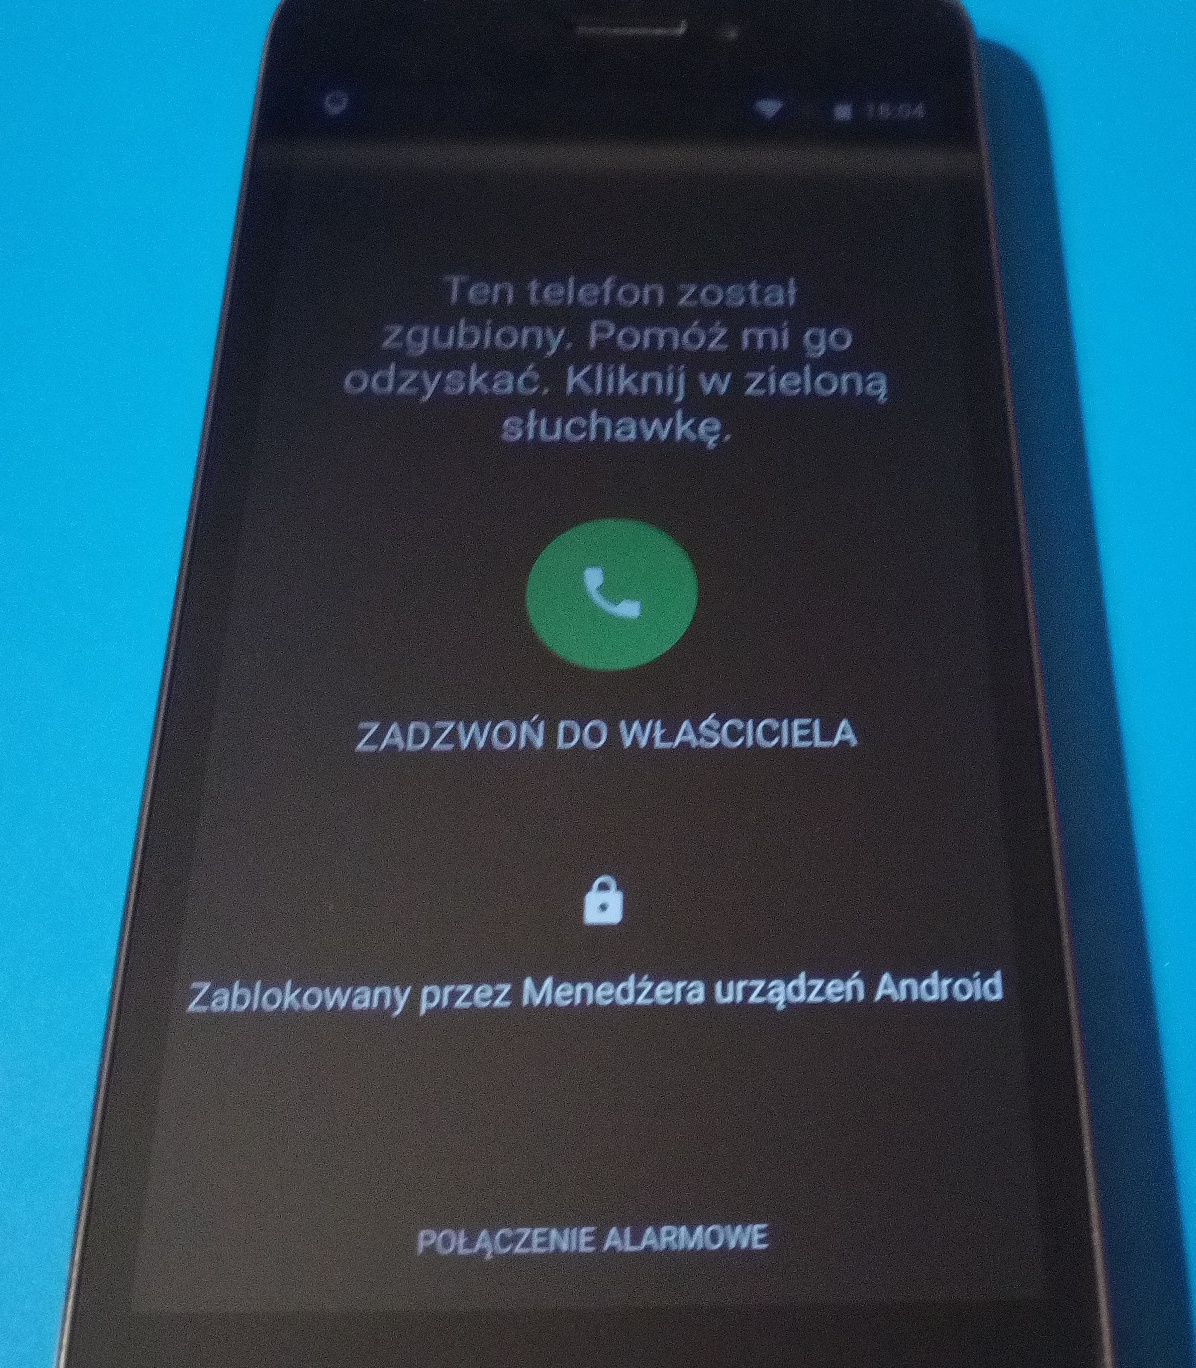 lokalizacja-smartfon-telefon-android-kradziez-blokada-aktywana